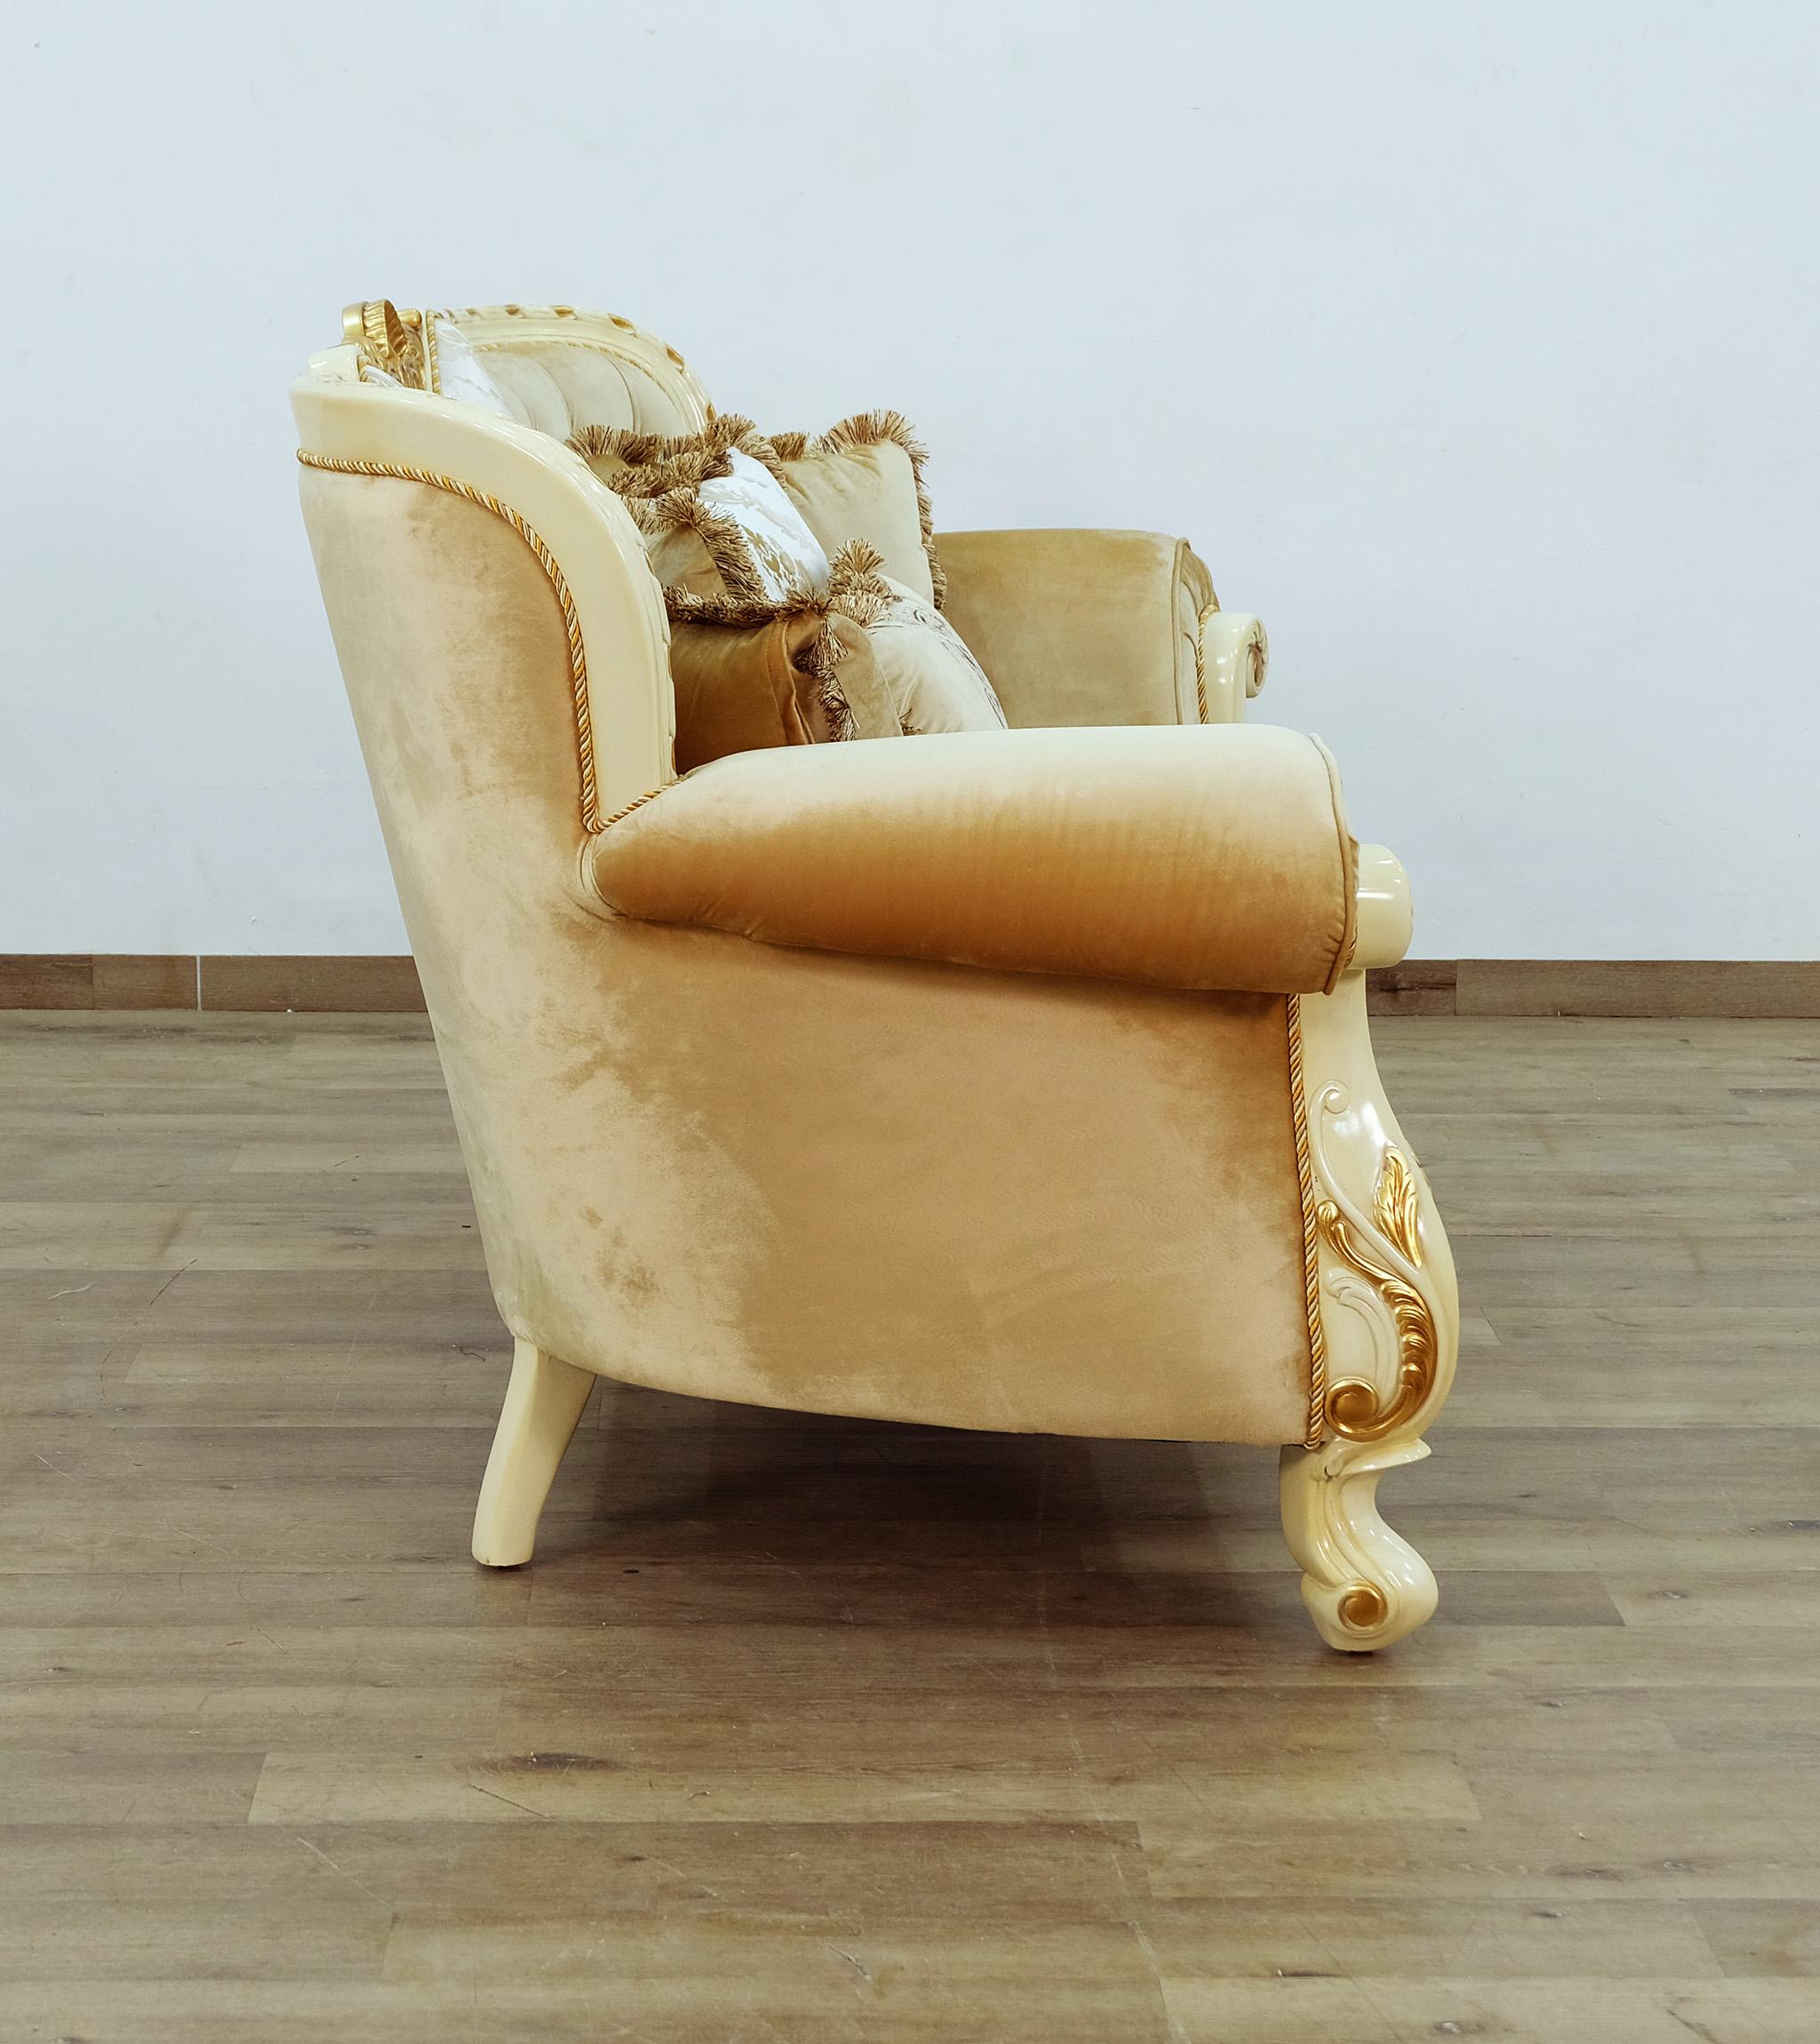 

    
EUROPEAN FURNITURE FANTASIA Sofa Set Off-White/Sand/Gold 40015-Set-3
